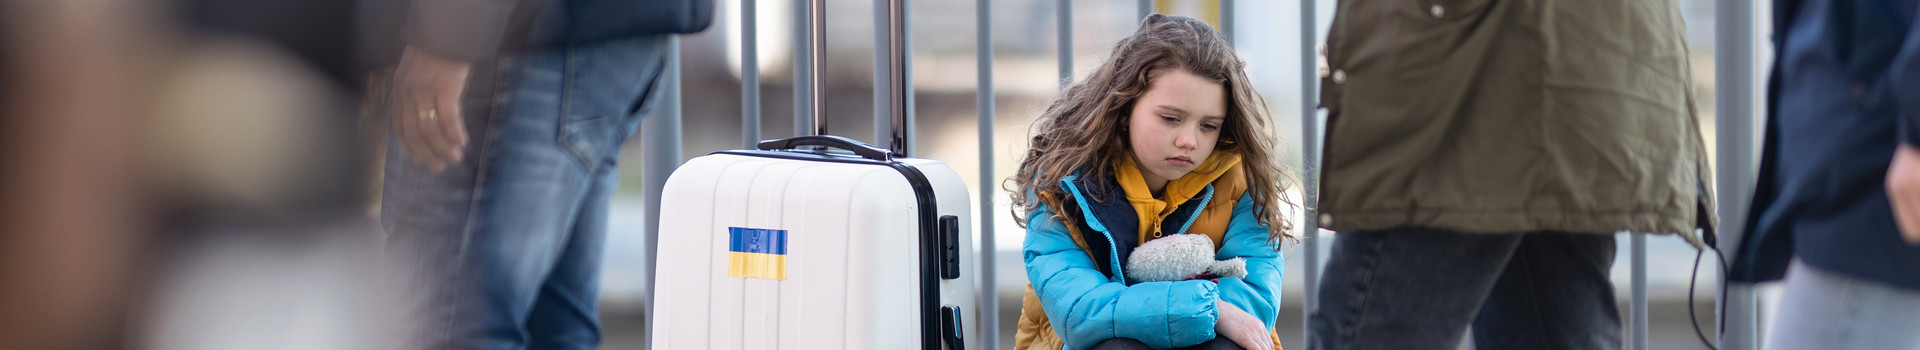 Ein trauriges Mädchen sitzt mit mehreren Gepäckstücken am Bahnhof. Am Koffer ist ein Ukraine-Sticker.